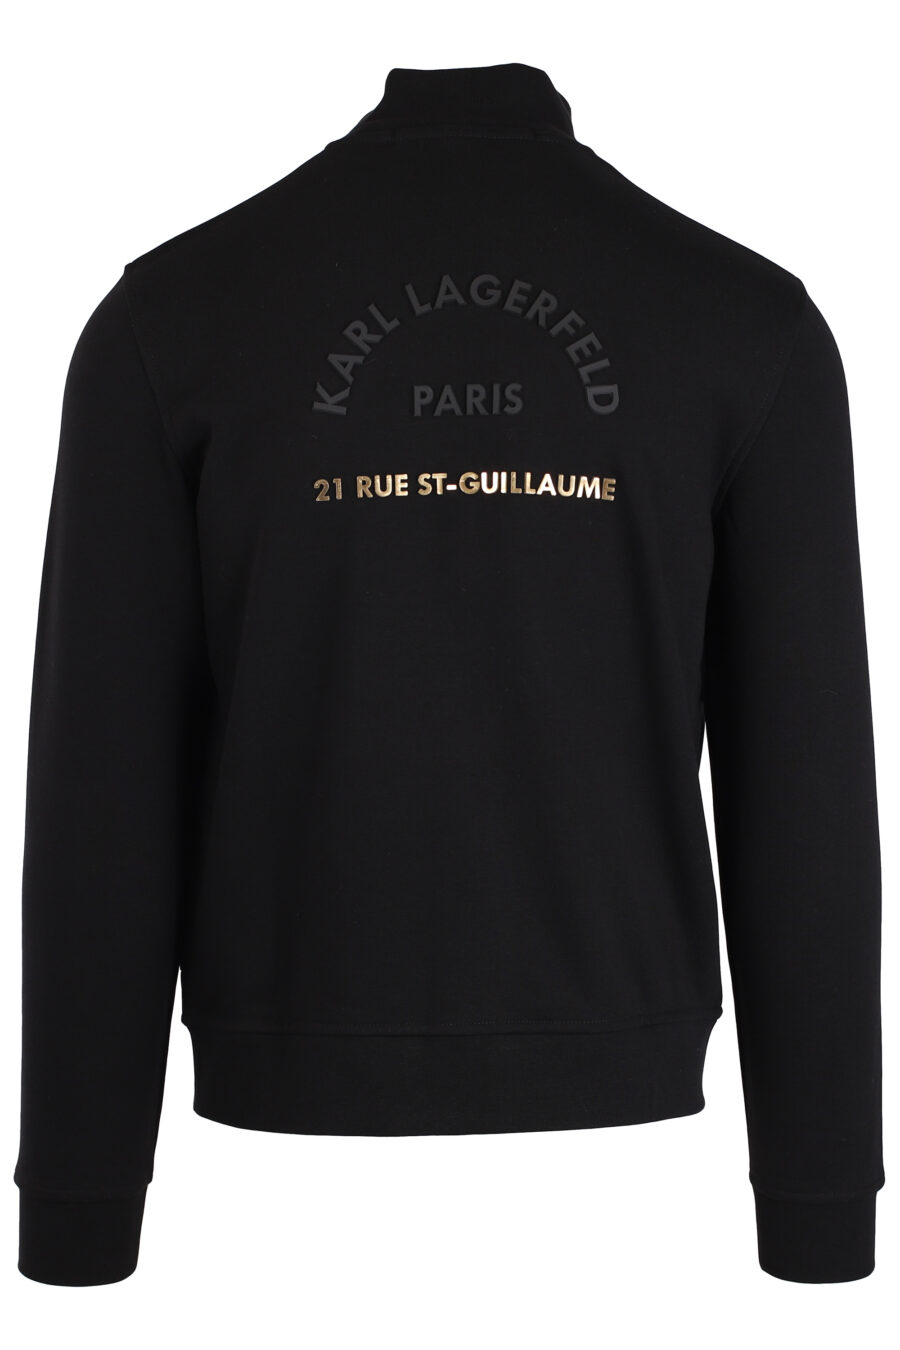 Schwarzes Sweatshirt mit Reißverschluss und goldenem Logo klein - IMG 3998